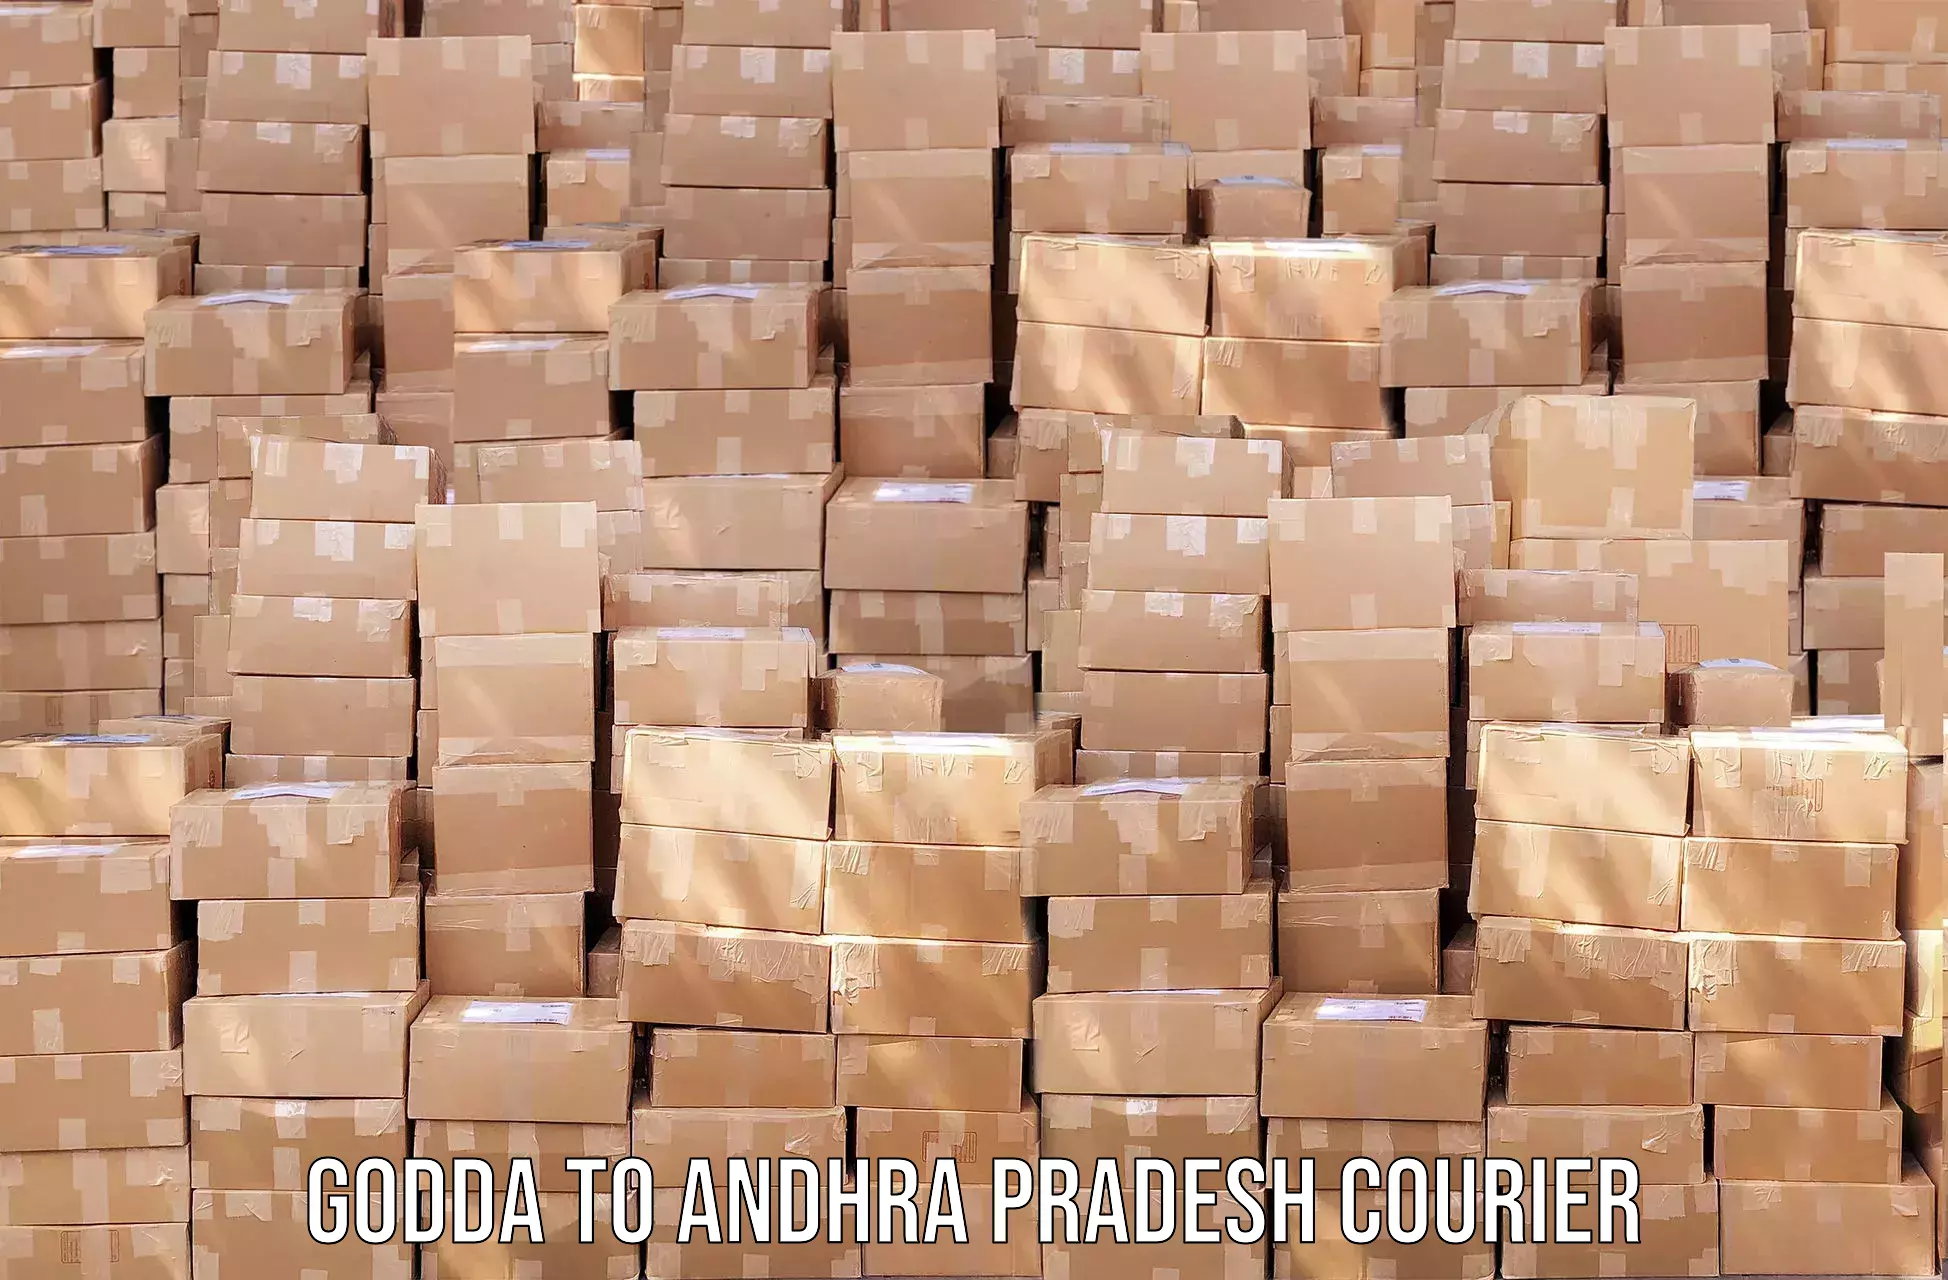 Courier service comparison Godda to Narasannapeta